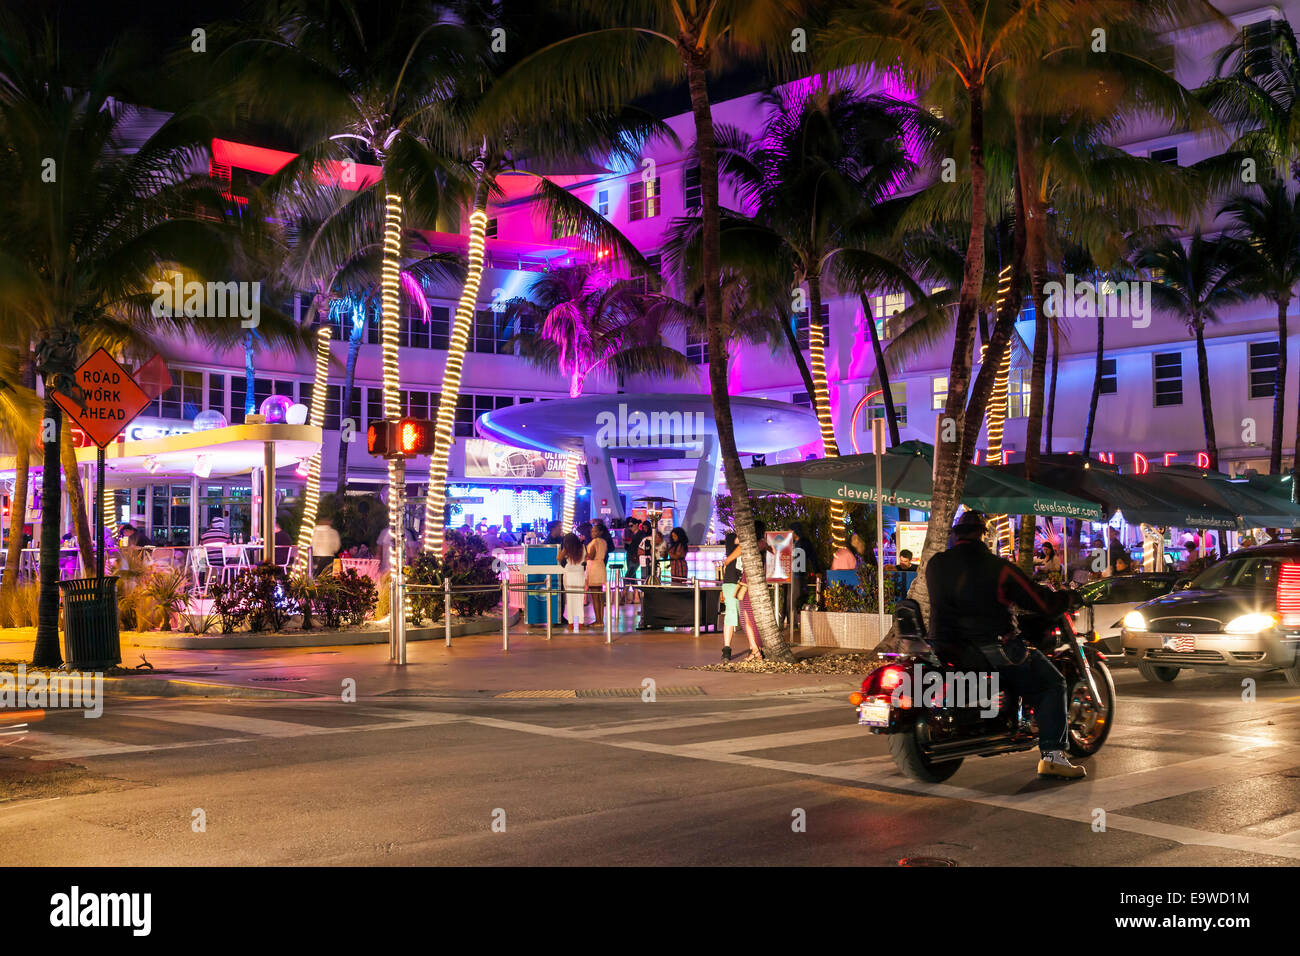 Bunte Beleuchtung der Clevelander Hotel und einen Nachtclub Terrassenbar am Deco Drive in South Beach Miami, Florida, USA. Stockfoto